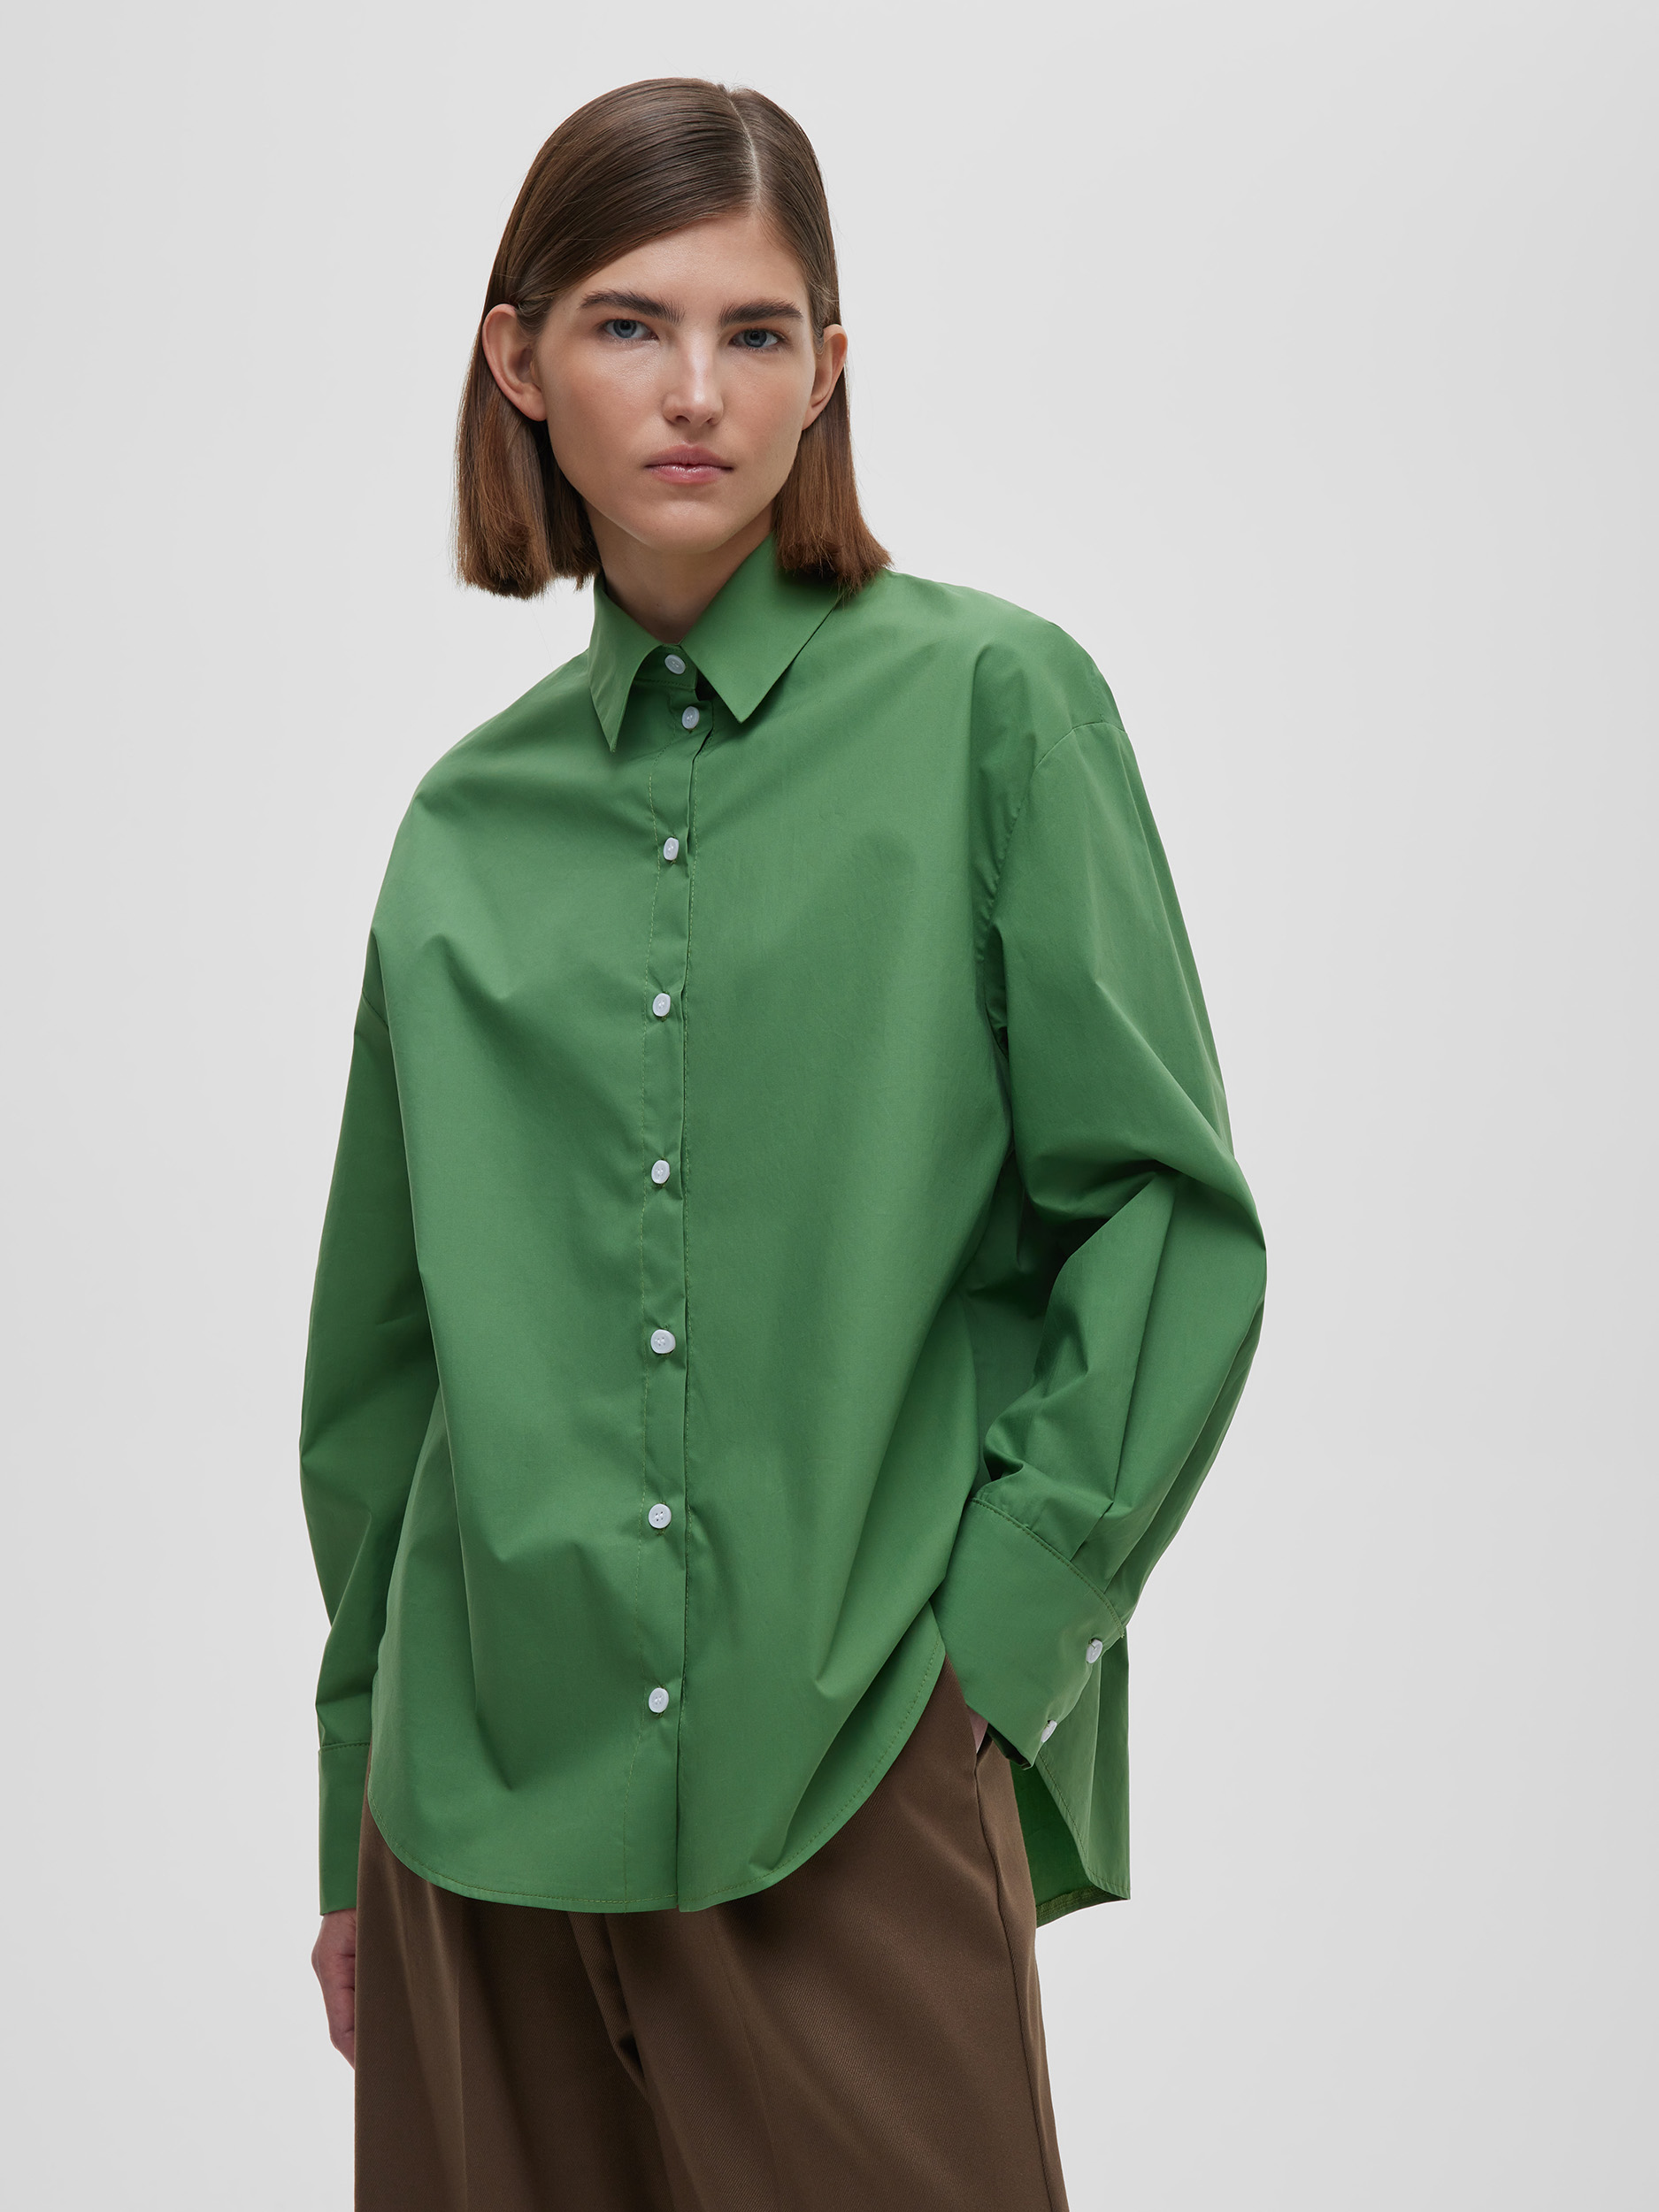 Рубашка женская свободная из хлопка, цвет – зеленый рубашка женская короткая из хлопка цвет – серый